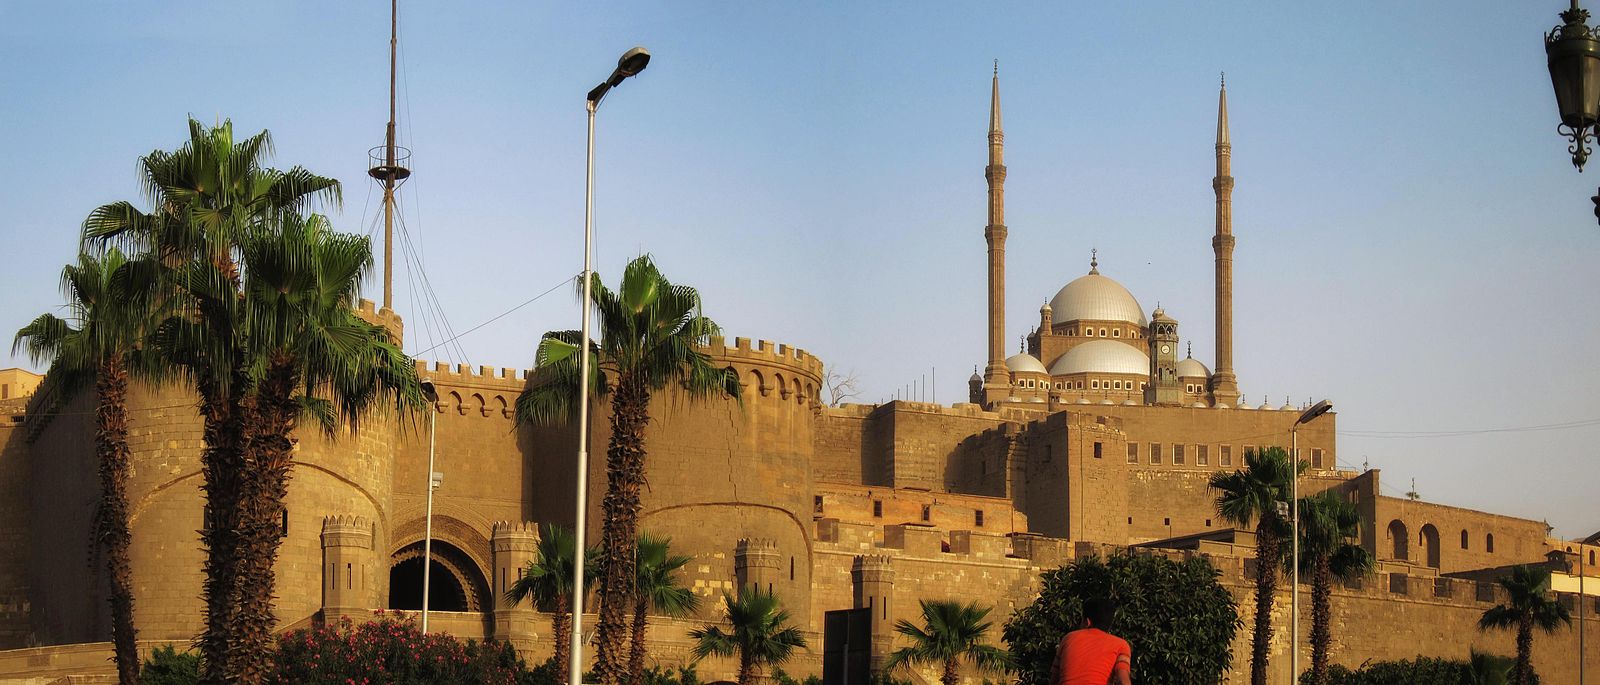 أفضل الأماكن السياحية في القاهرة - قلعة صلاح الدين